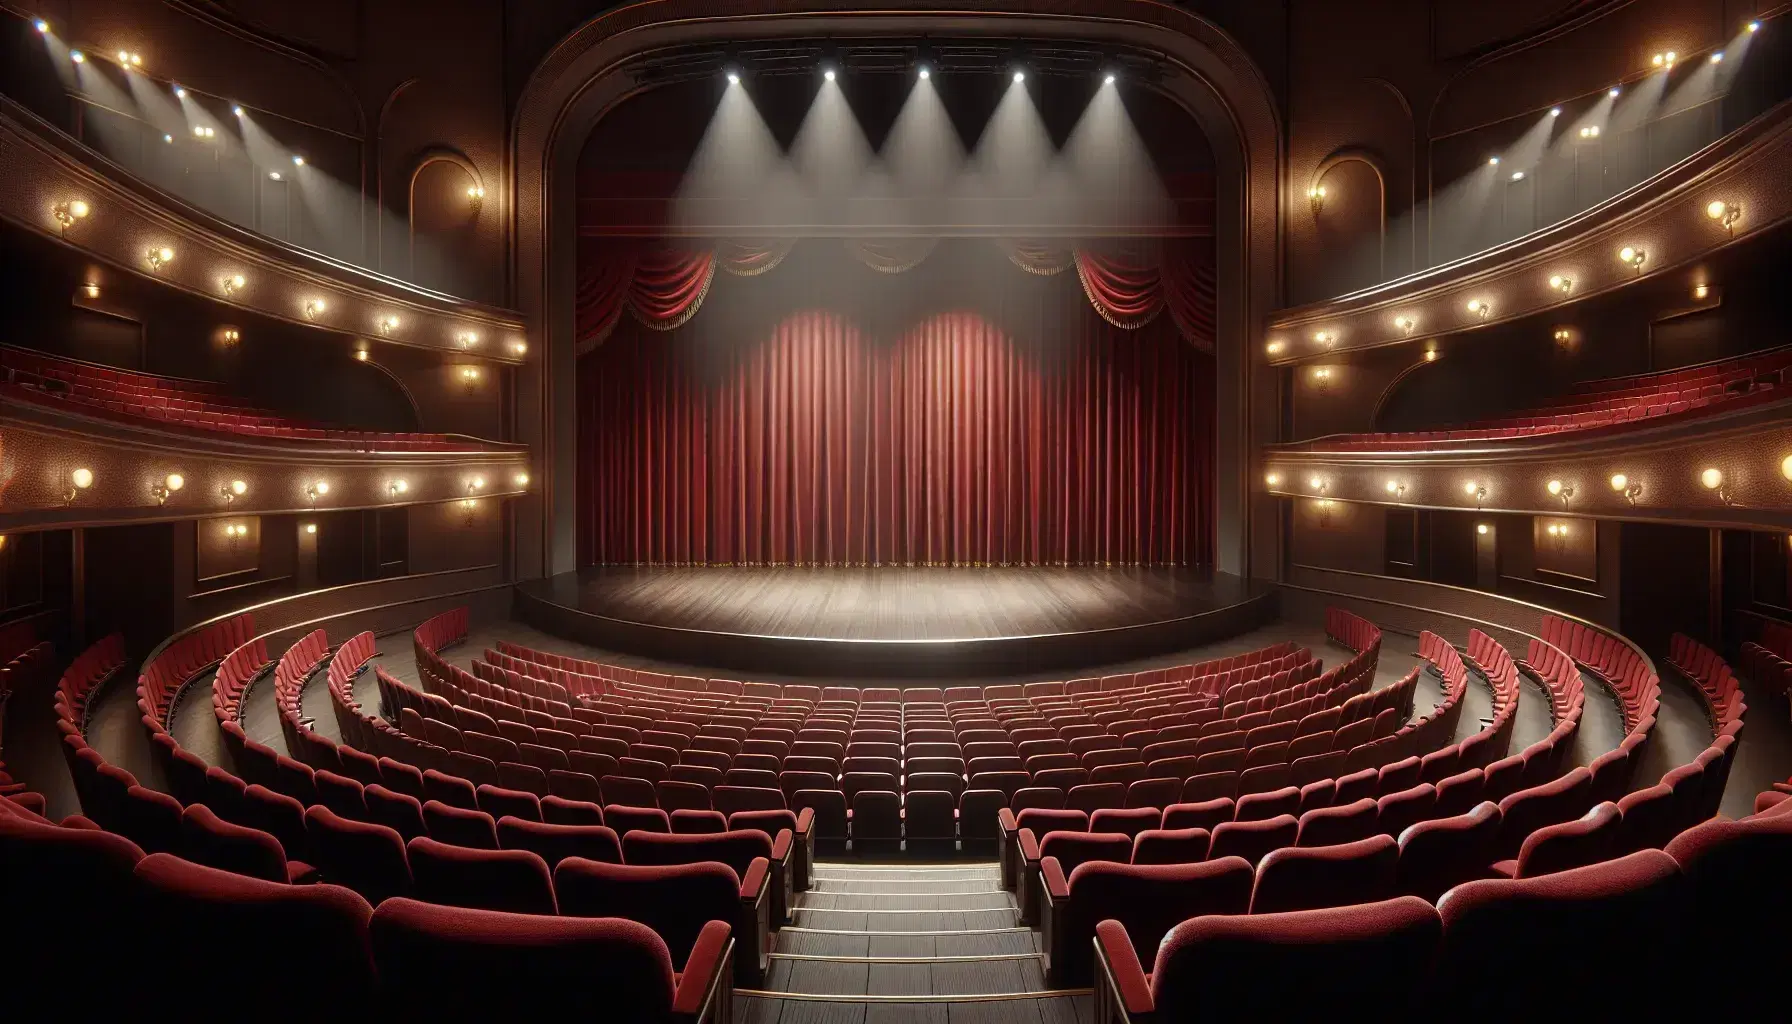 Escenario de teatro vacío con asientos de terciopelo rojo, cortinas laterales recogidas y luces de escenario apagadas, listo para una función.